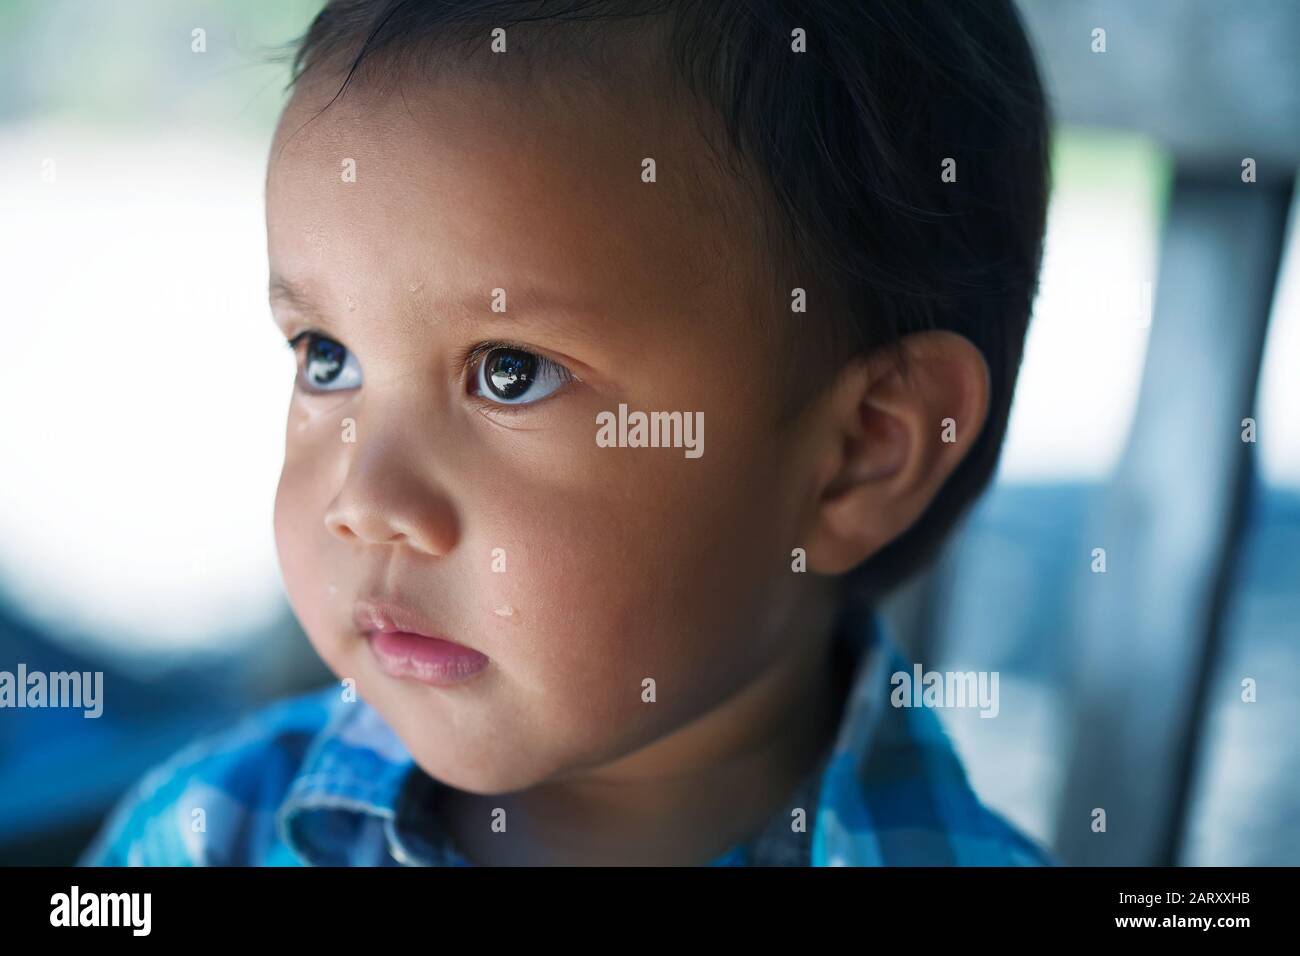 Un niño pequeño de unos dos años de edad que se ve triste, con ojos de lágrimas y considerado; después de llorar. Foto de stock